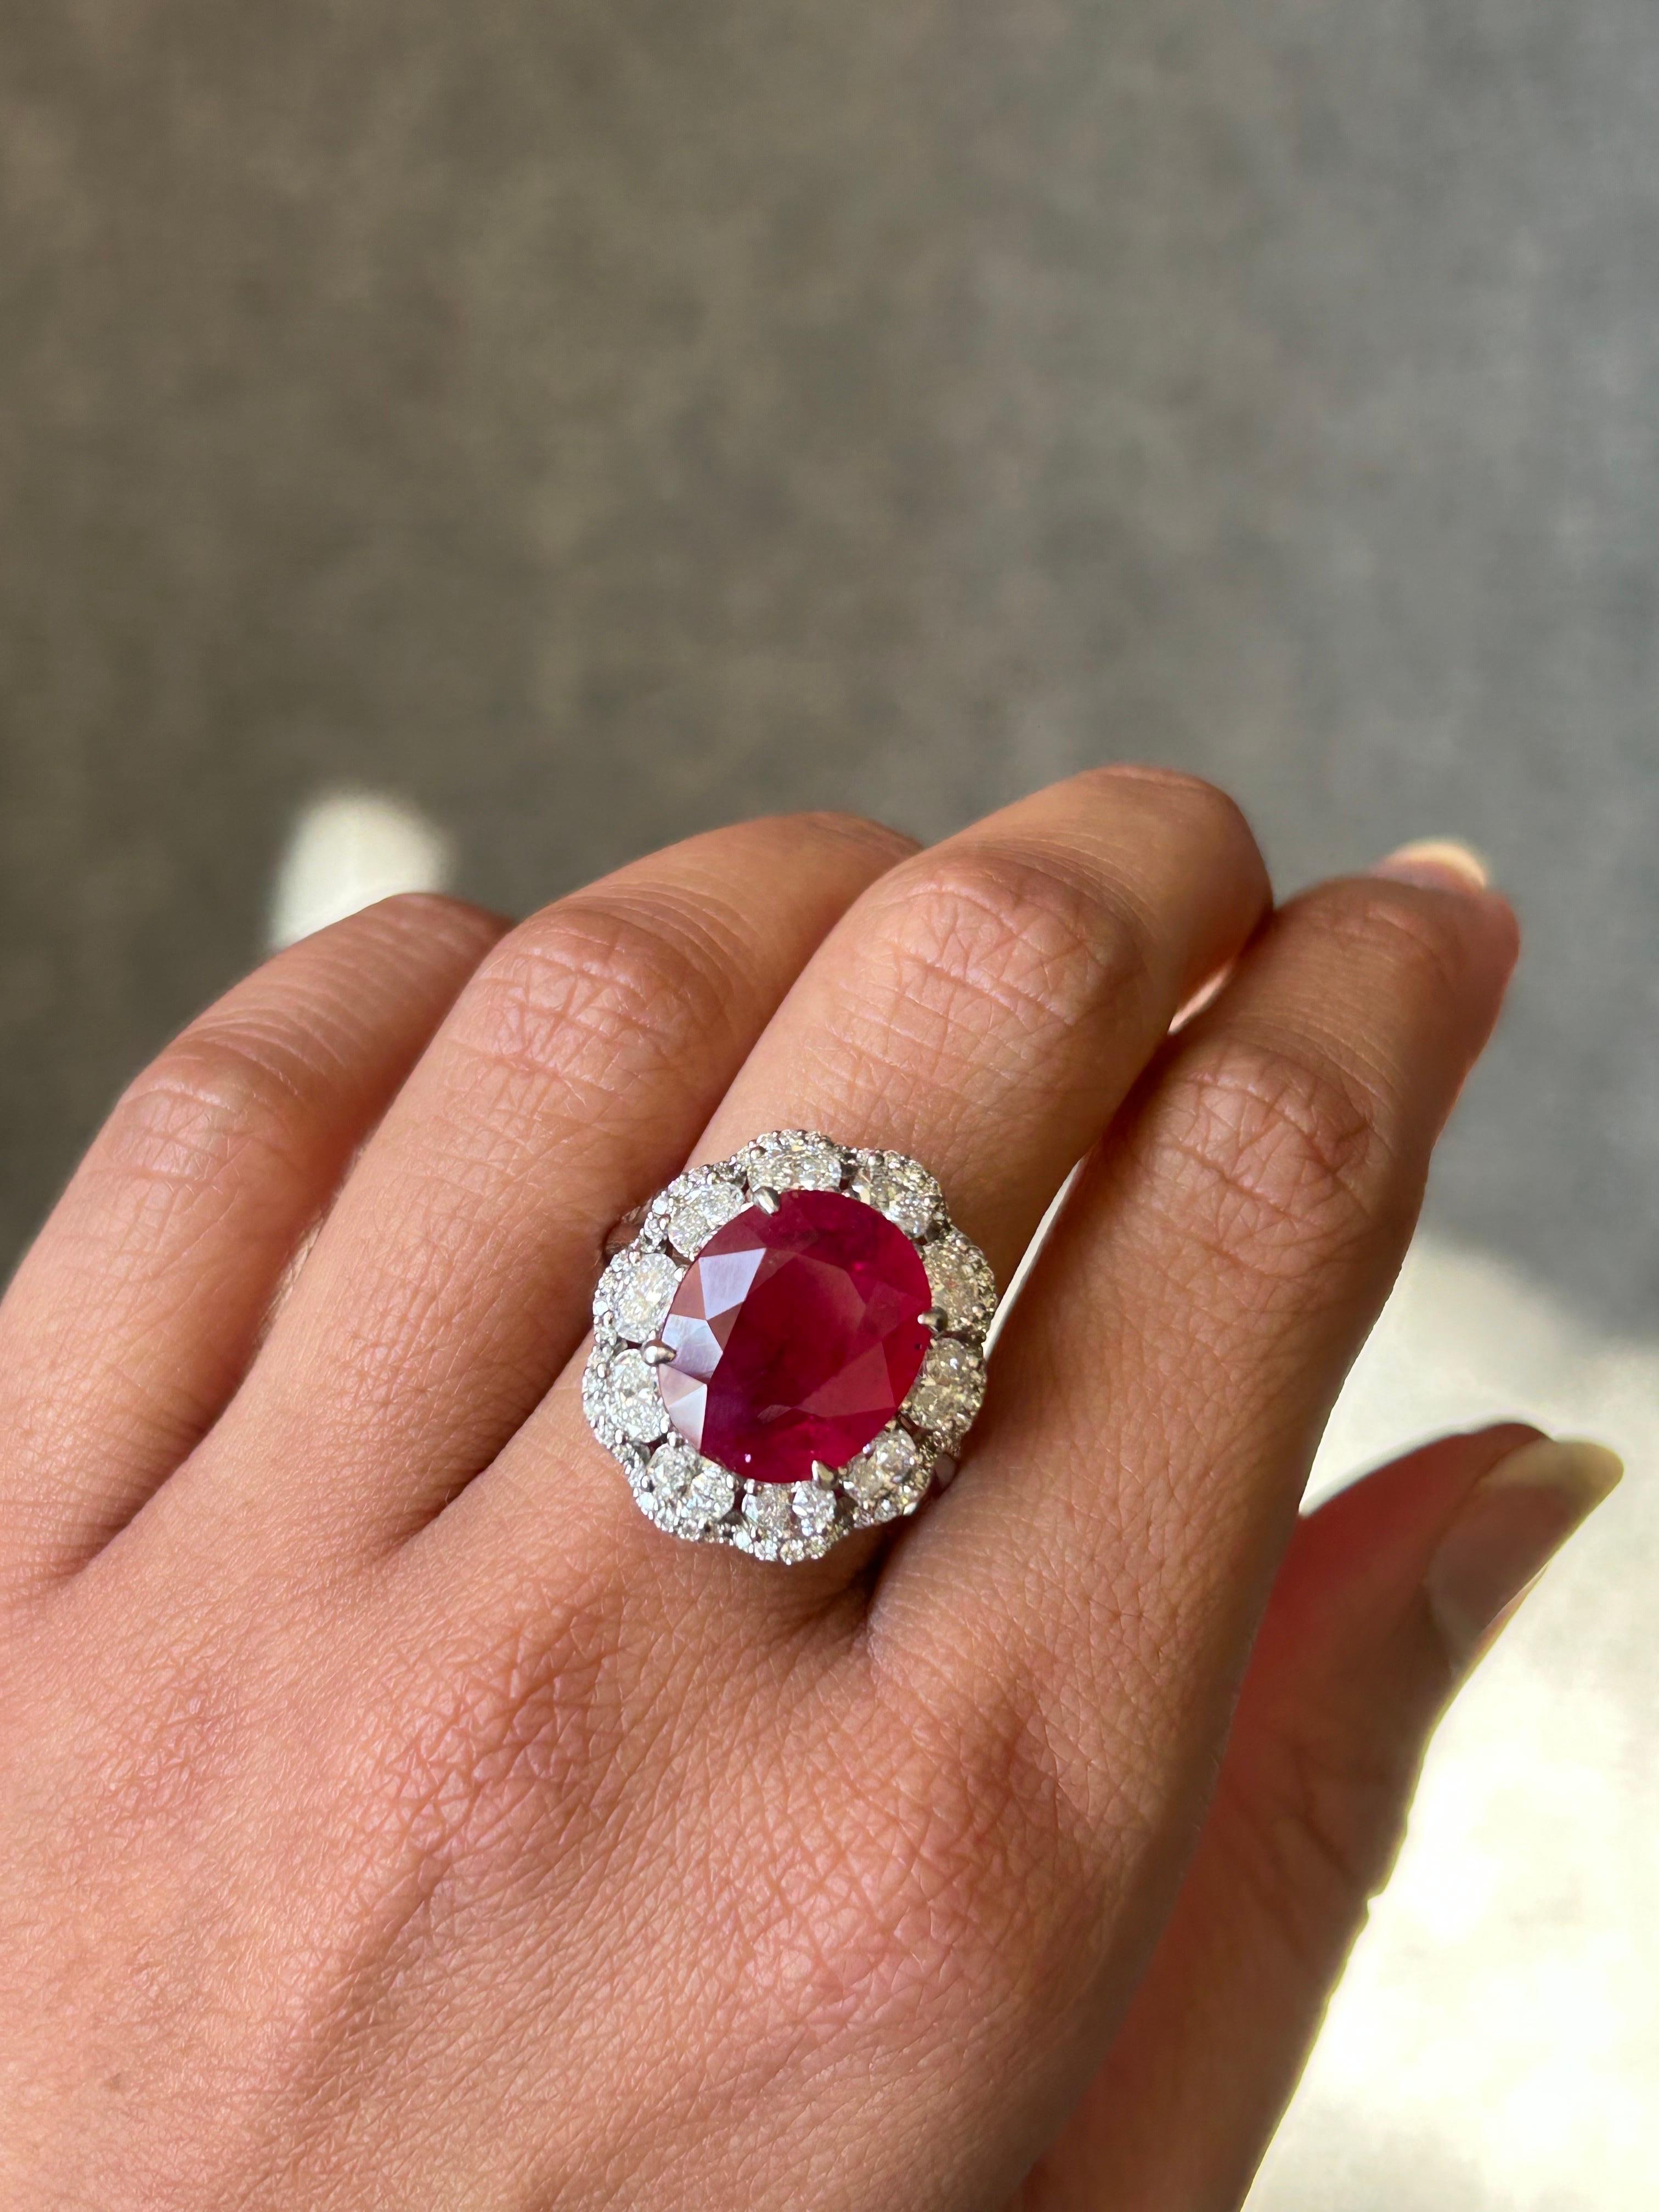 Un superbe rubis de Birmanie certifié de 7.25 carats, de couleur rouge vif et transparent. La pièce centrale est ornée de diamants de forme ovale de 1,55 carat et de diamants de taille brillant de 0,30 carat, qualité VS, couleur G. La bague est